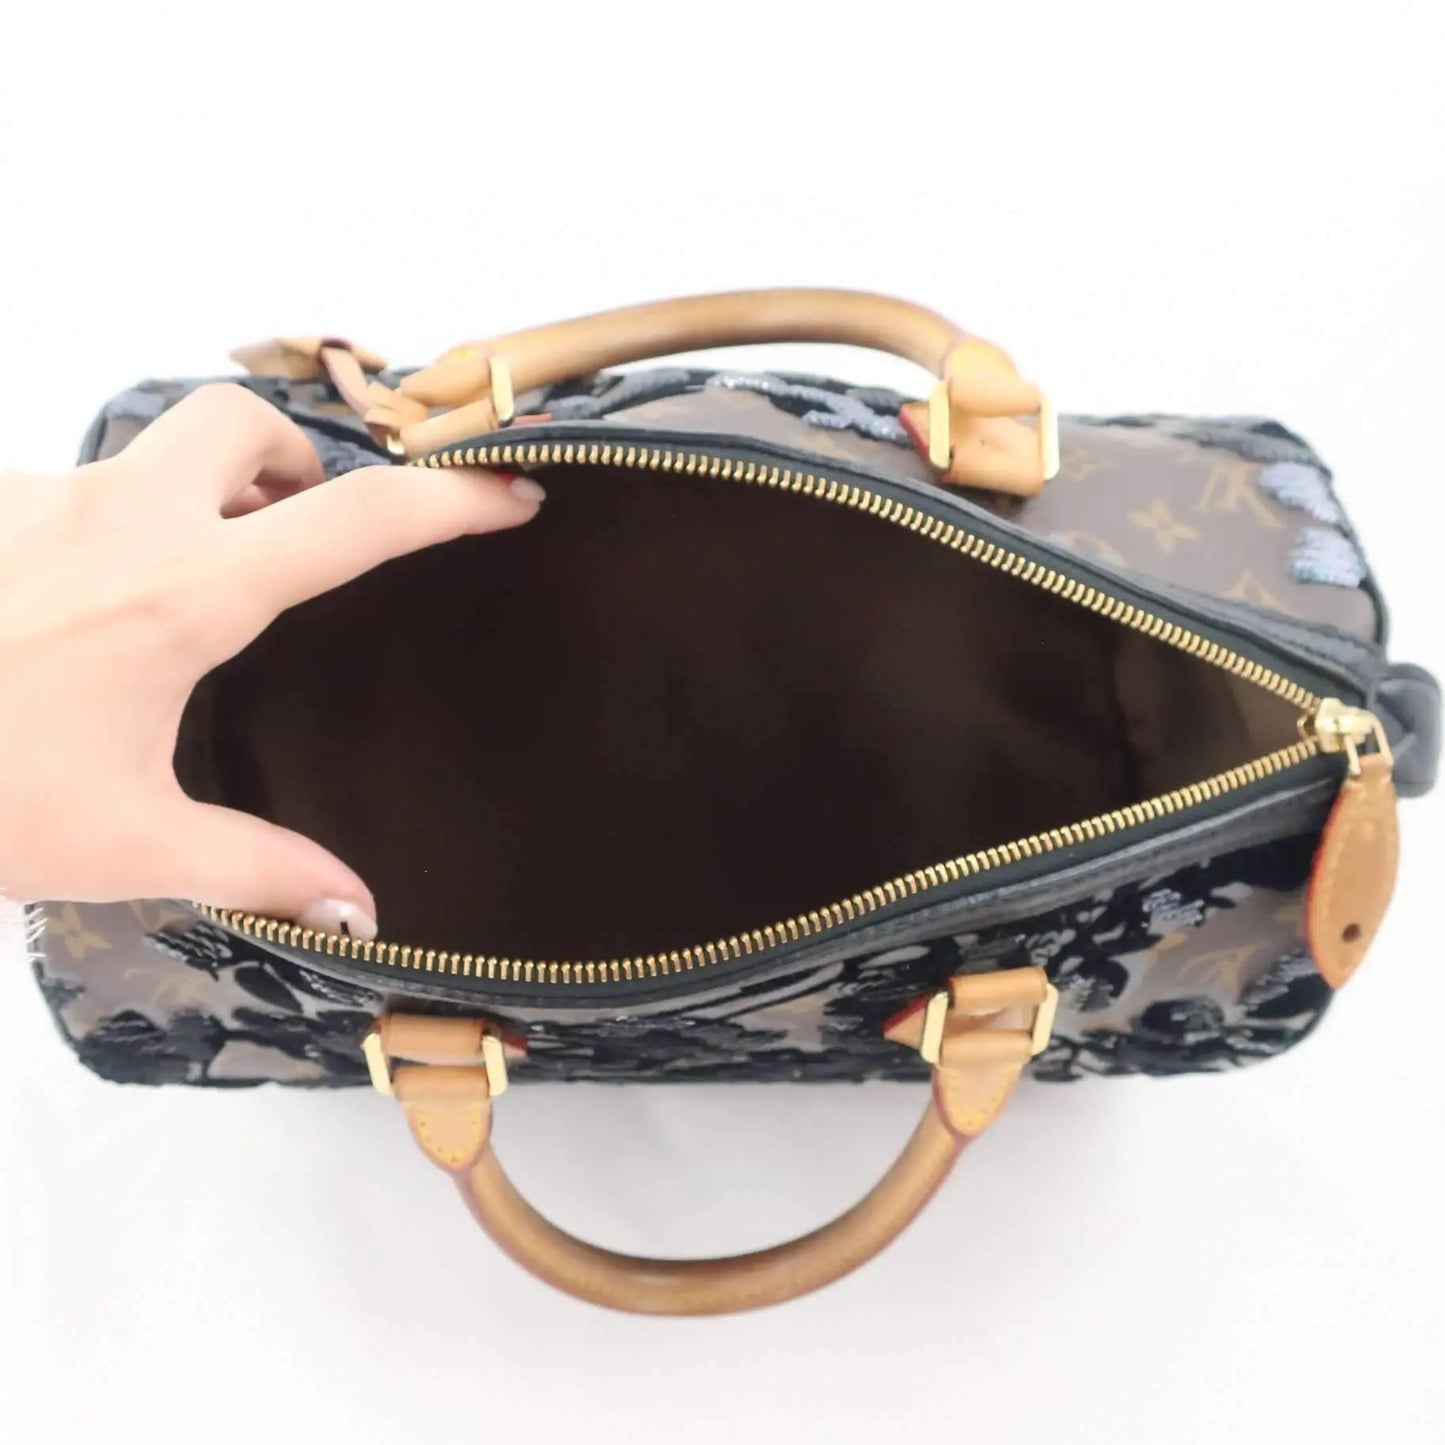 Limited Edition Louis VuittonFleur de Jais Speedy 30 Handbag – Fancy Lux